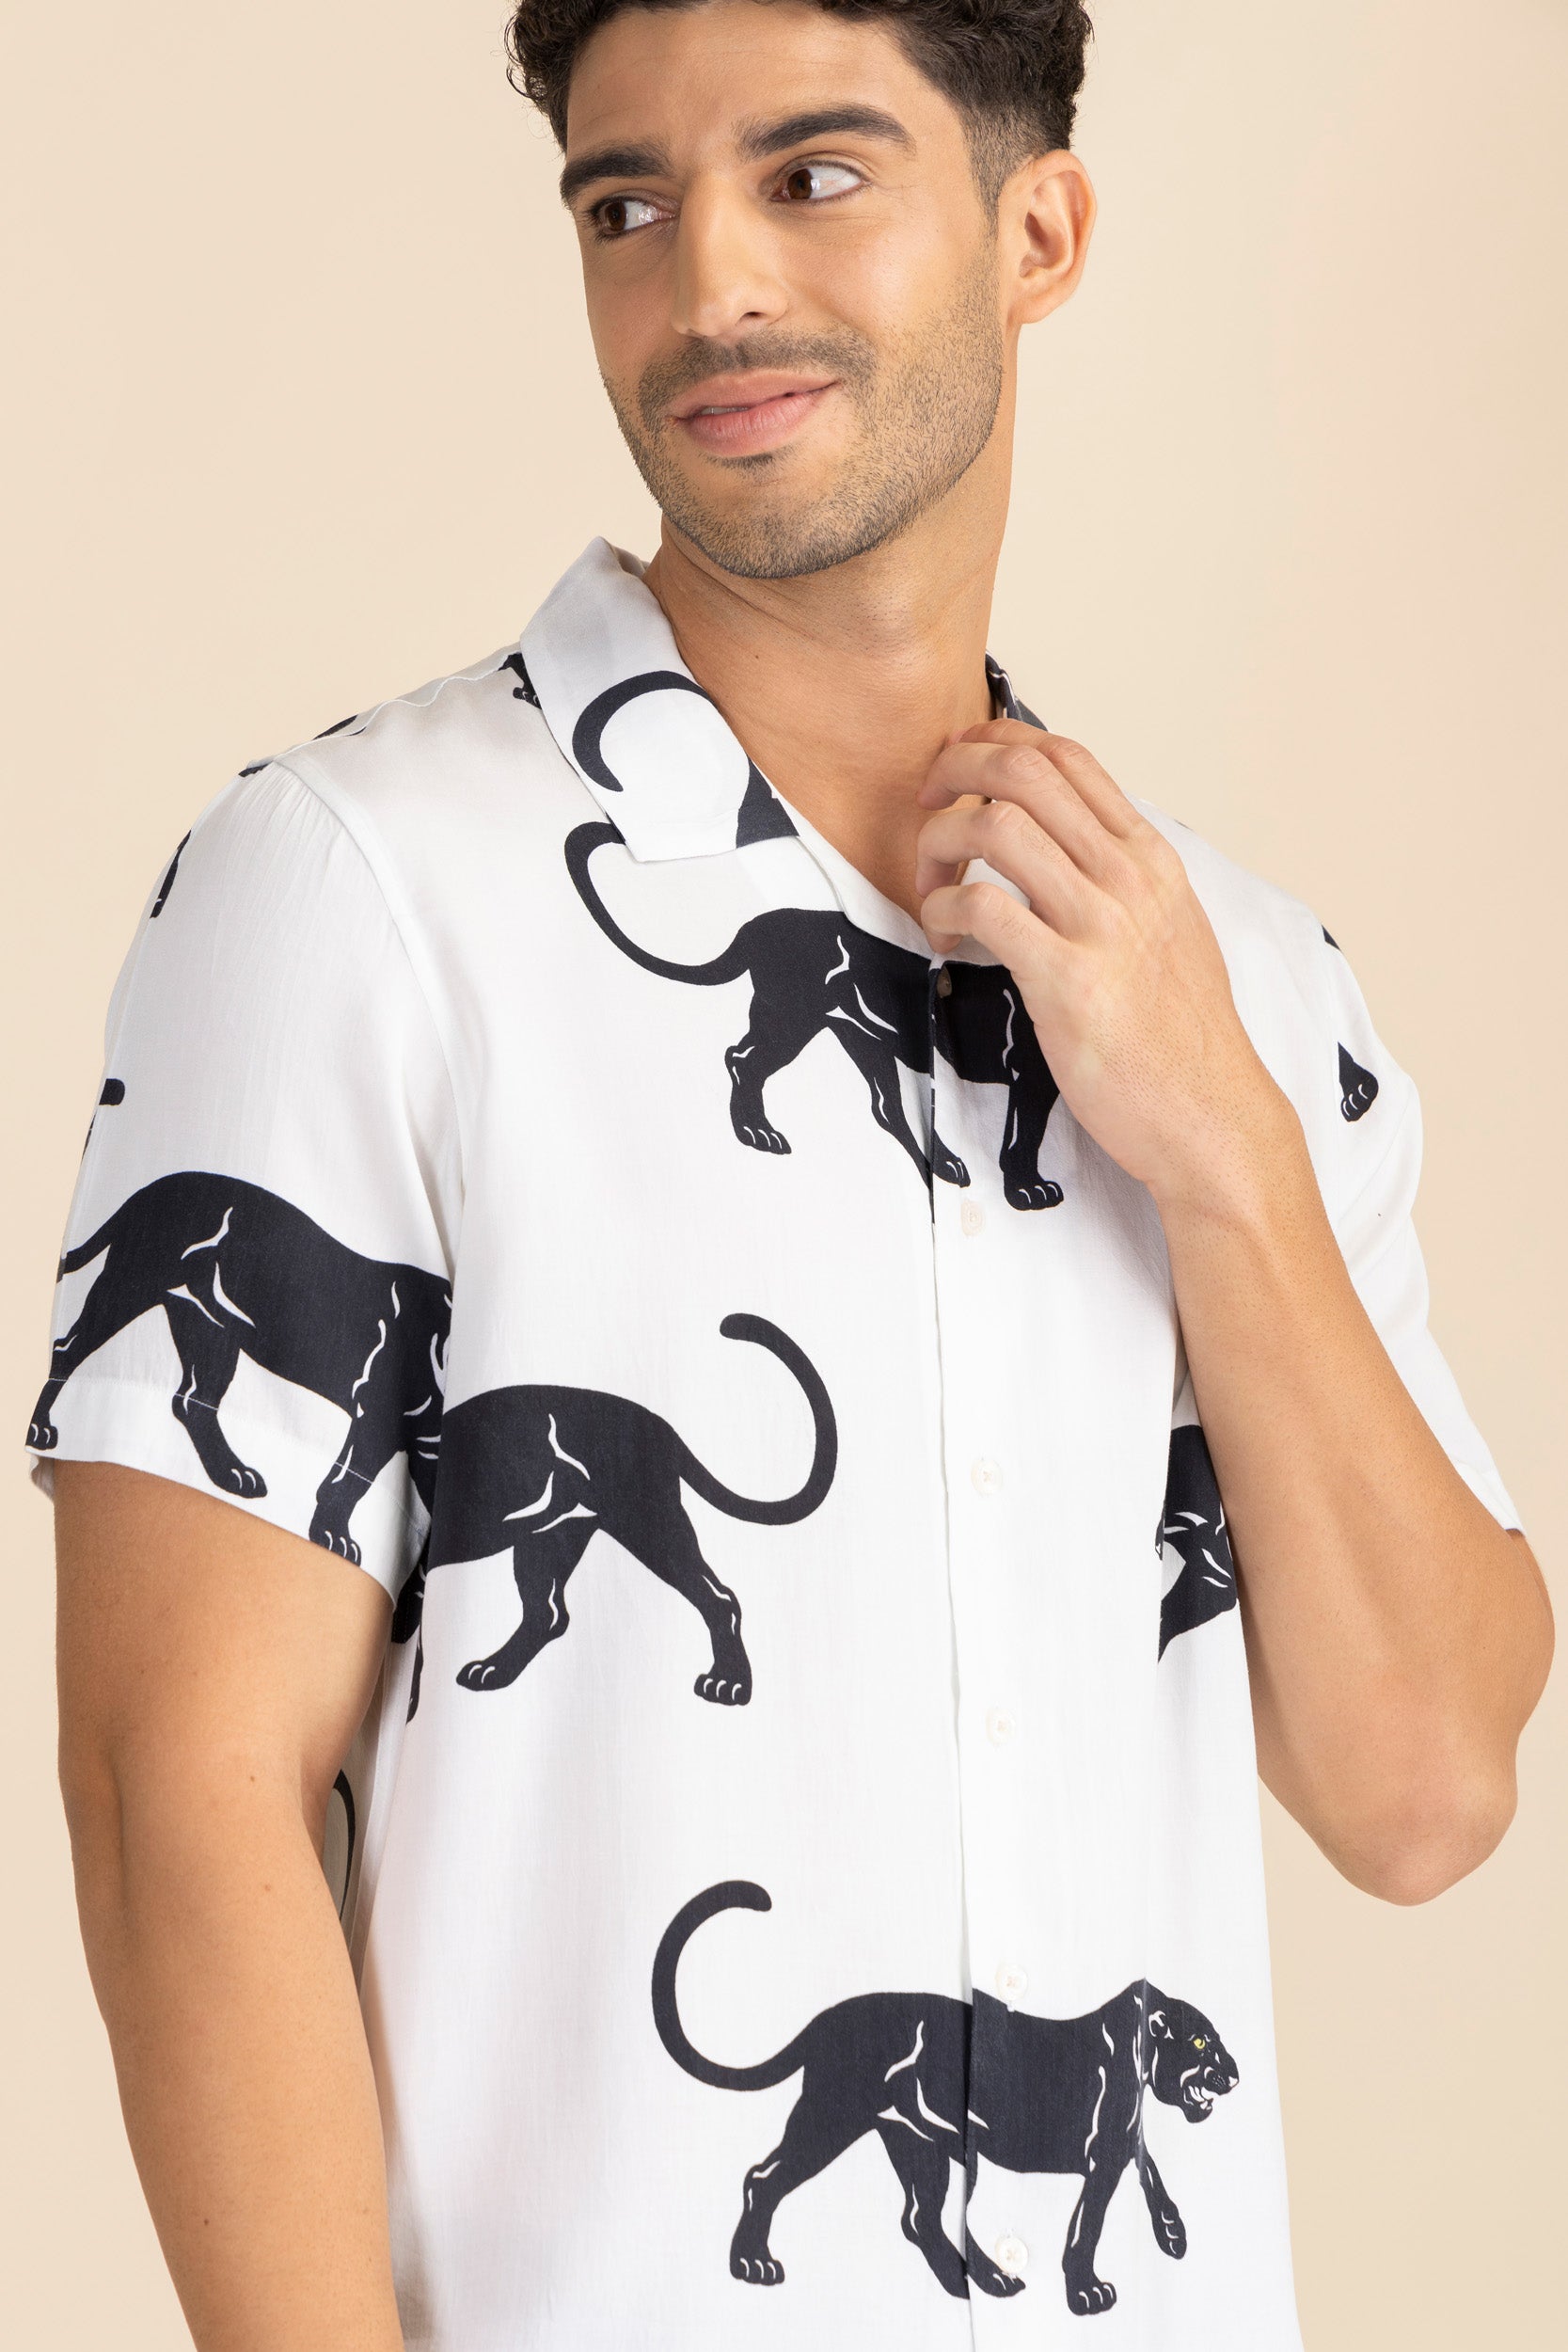 Black Panther Cuban Shirt